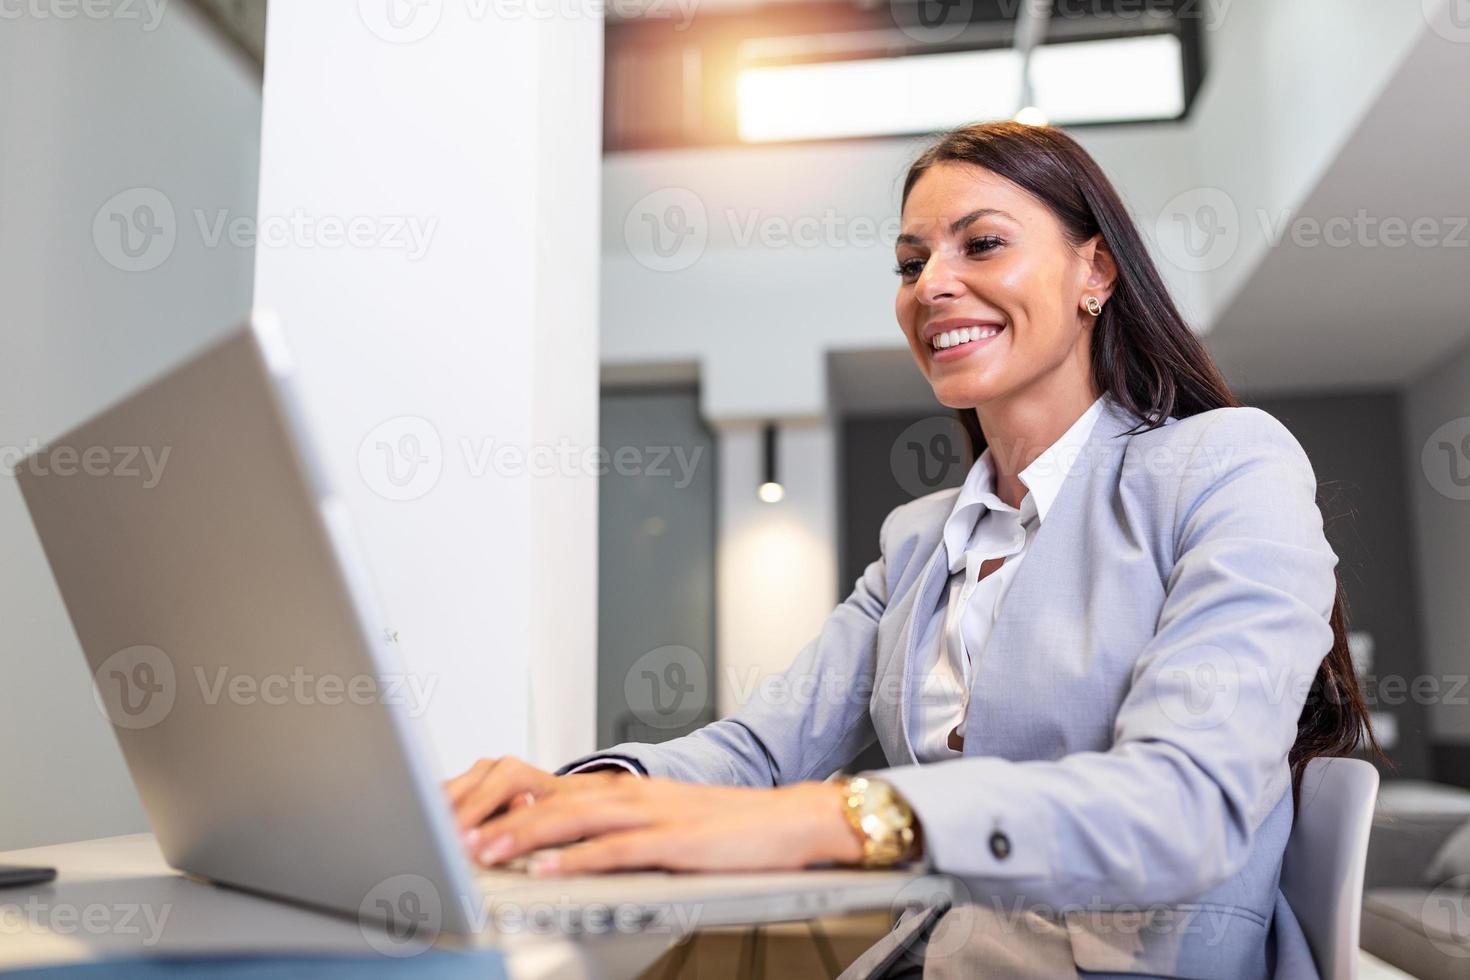 mujer joven que trabaja desde casa, mientras se encuentra en aislamiento de cuarentena durante la crisis de salud de covid-19. retrato de una hermosa joven empresaria sonriendo y mirando la pantalla de un portátil foto